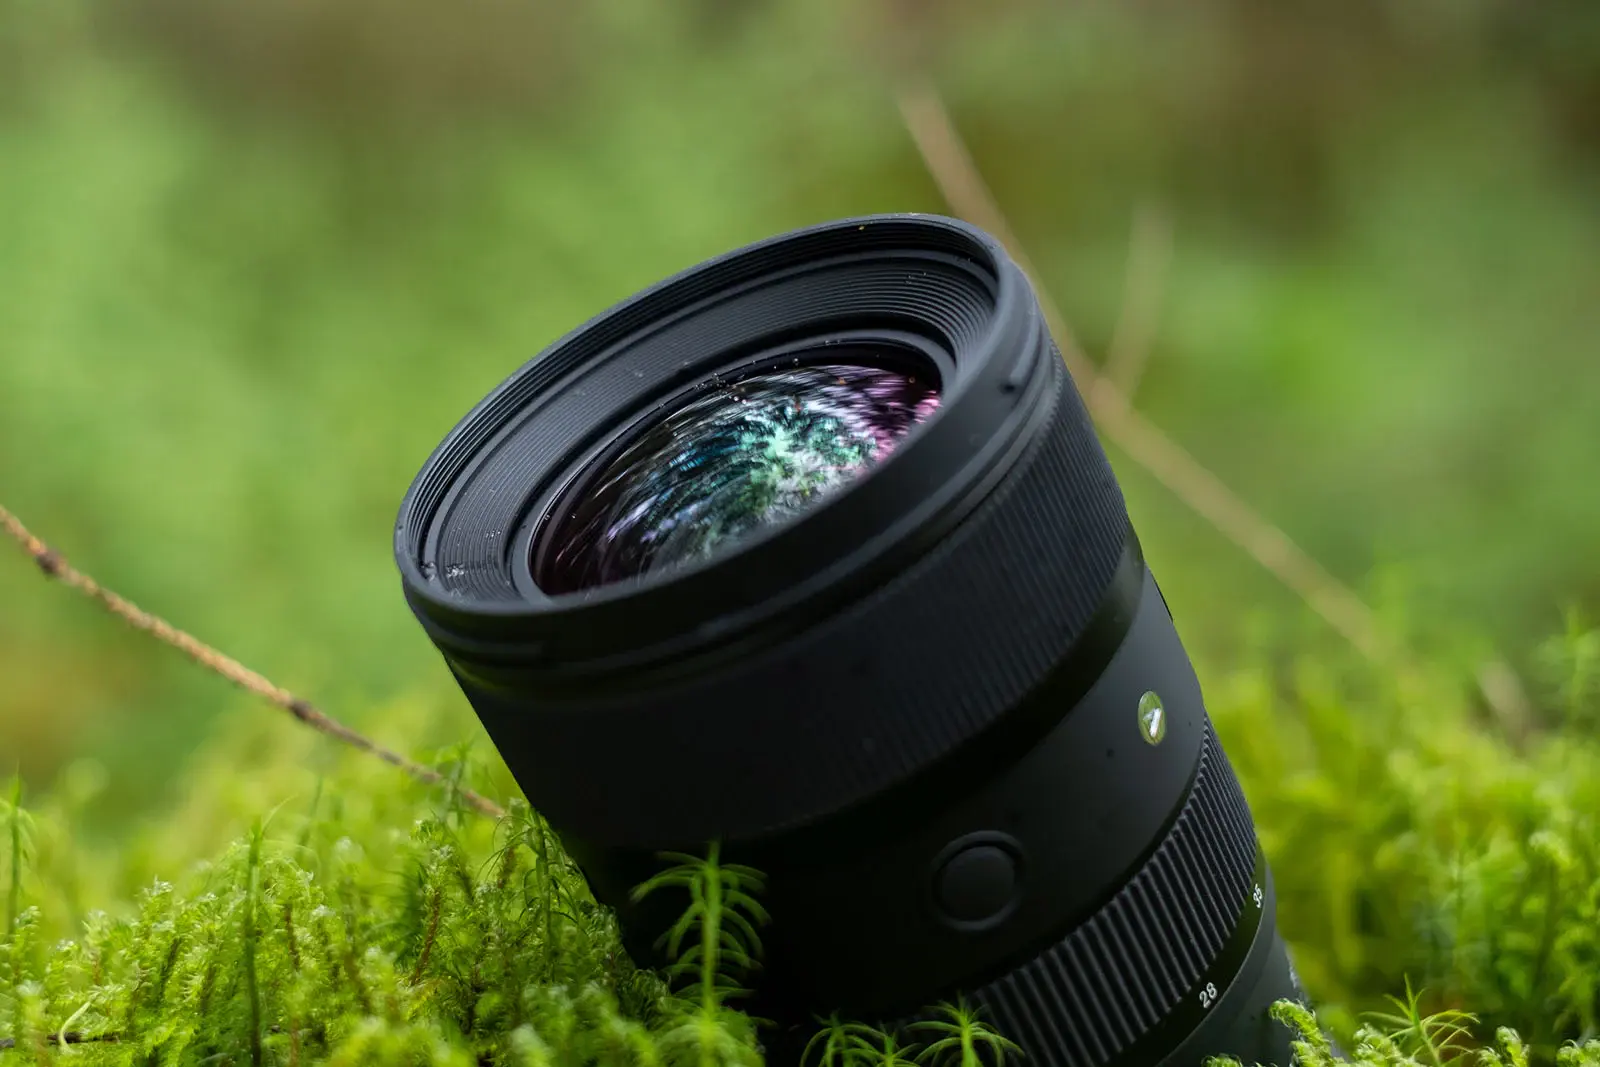 Ống kính Sigma 28-45mm F1.8 DG DN Art, ống kính zoom khẩu độ F1.8 đầu tiên cho máy ảnh full frame mirrorless